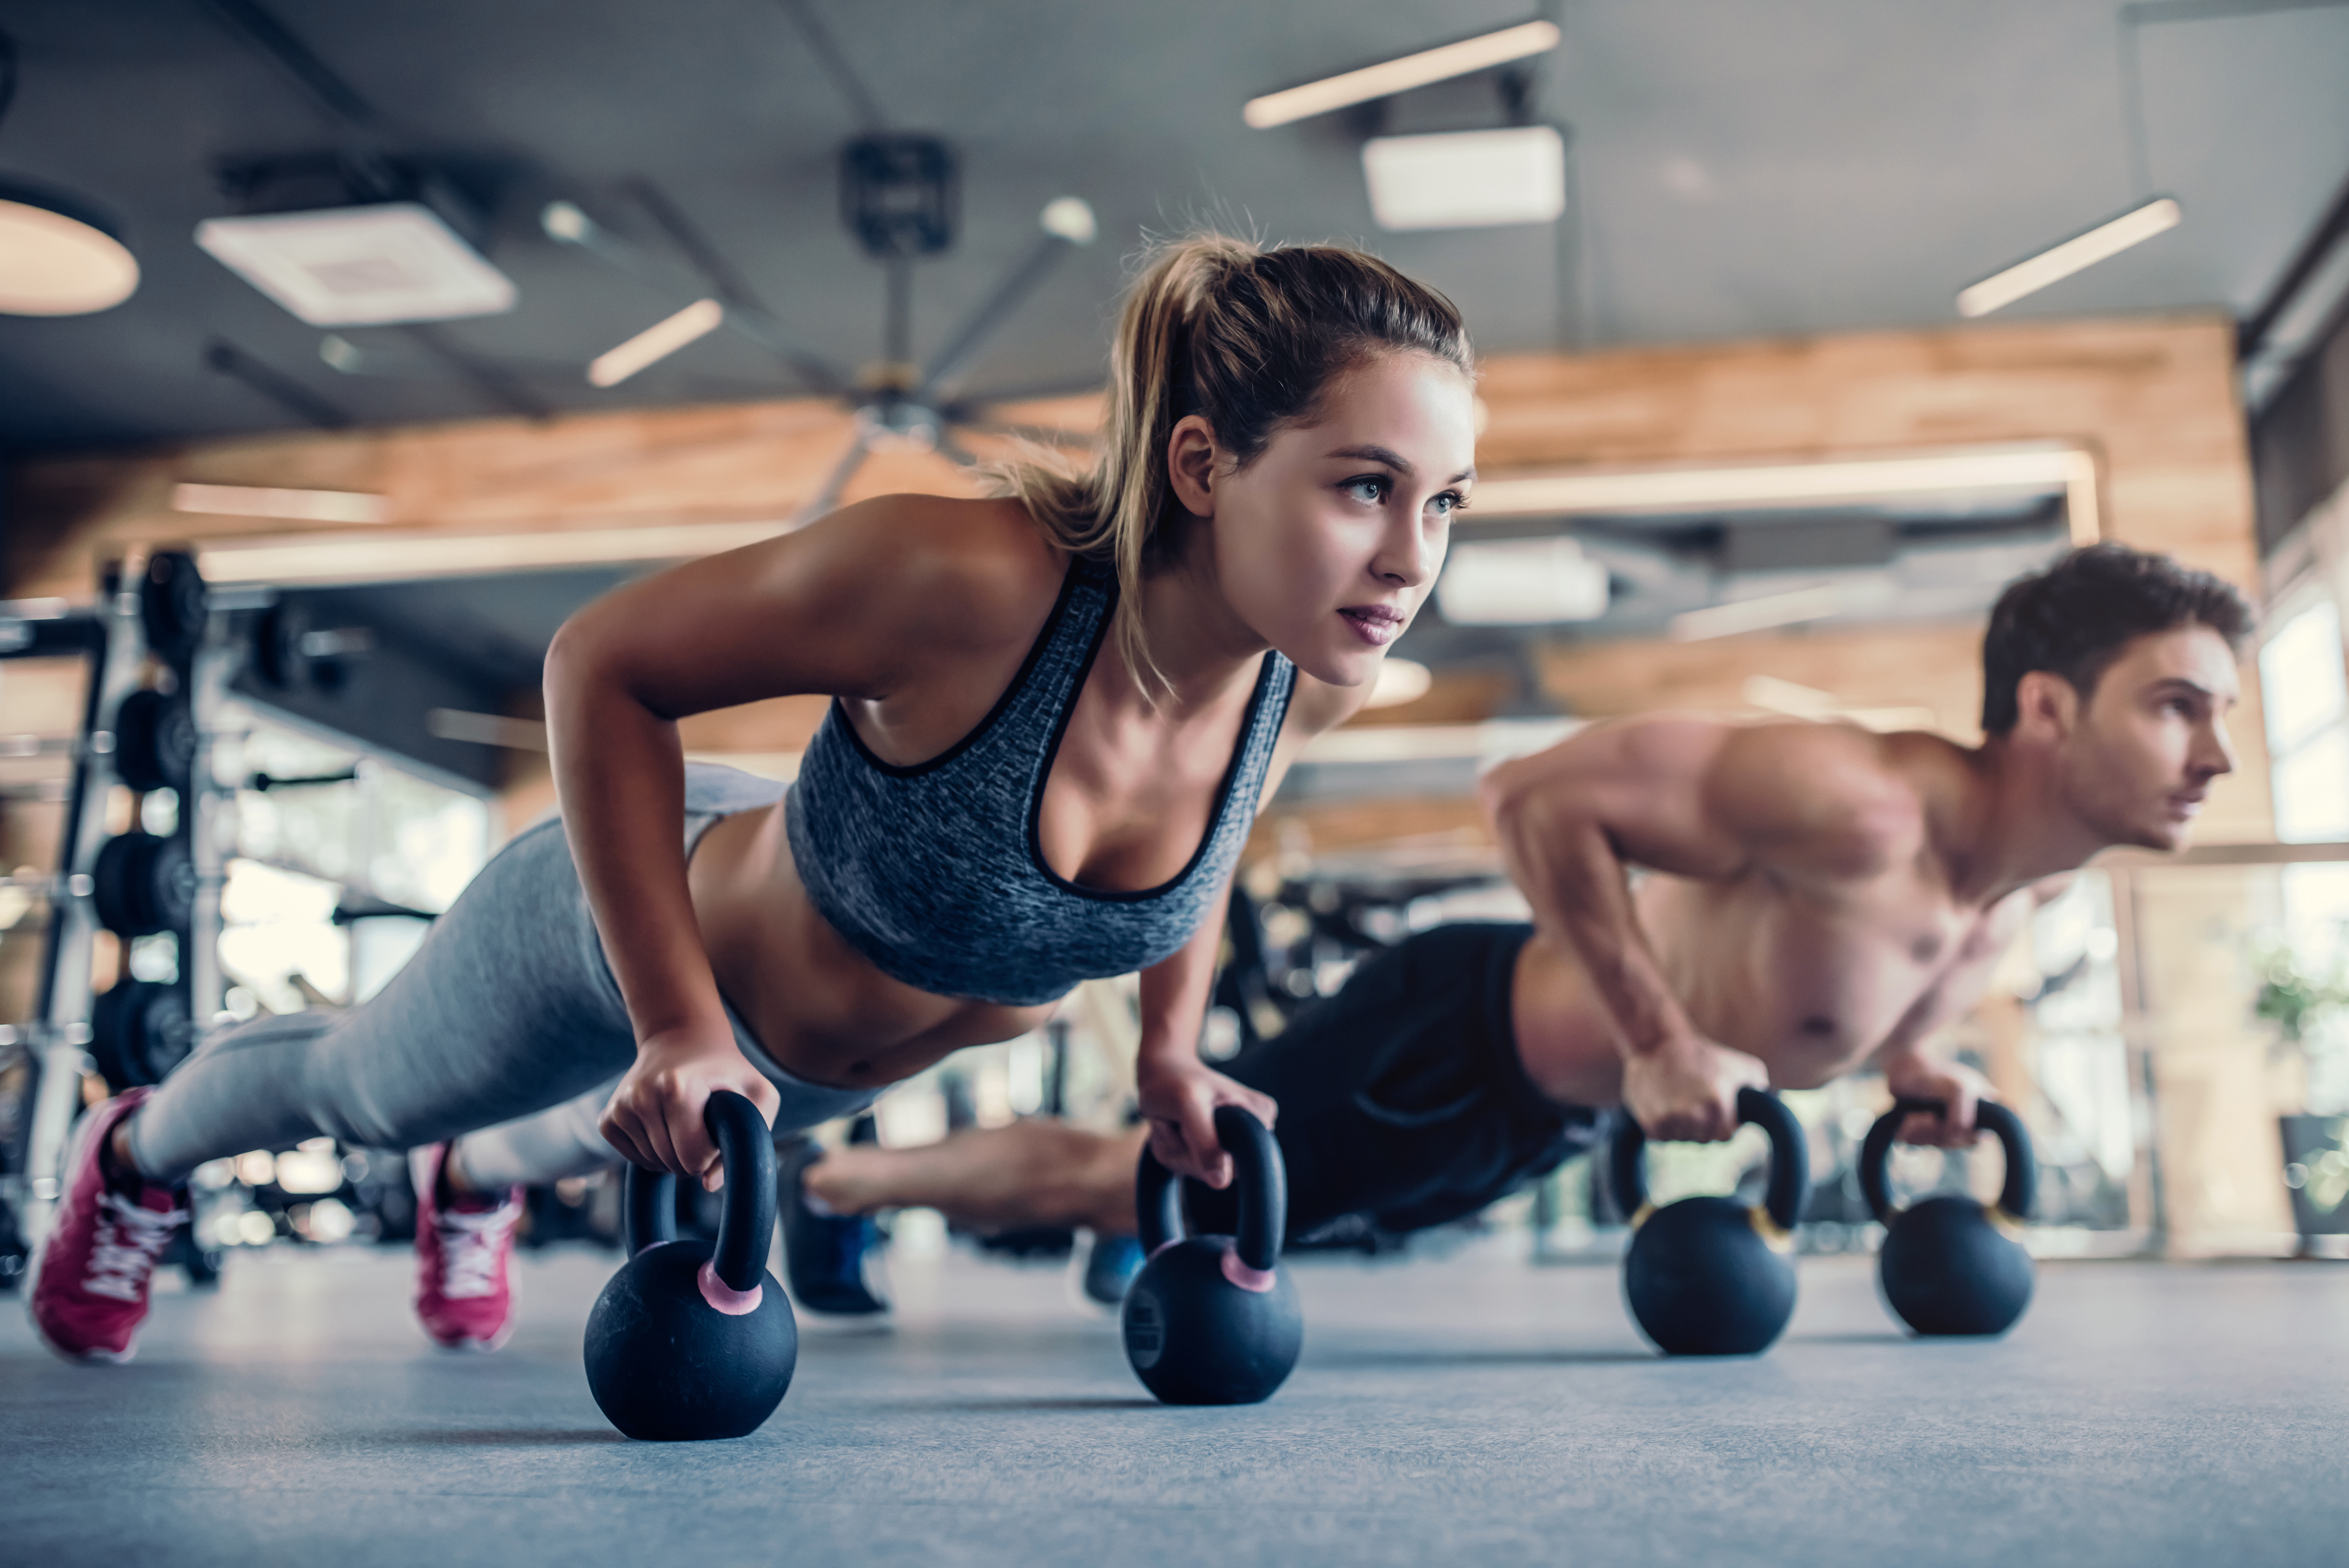 Ein Mann und eine Frau trainieren in einem Fitnessstudio | Quelle: Shutterstock